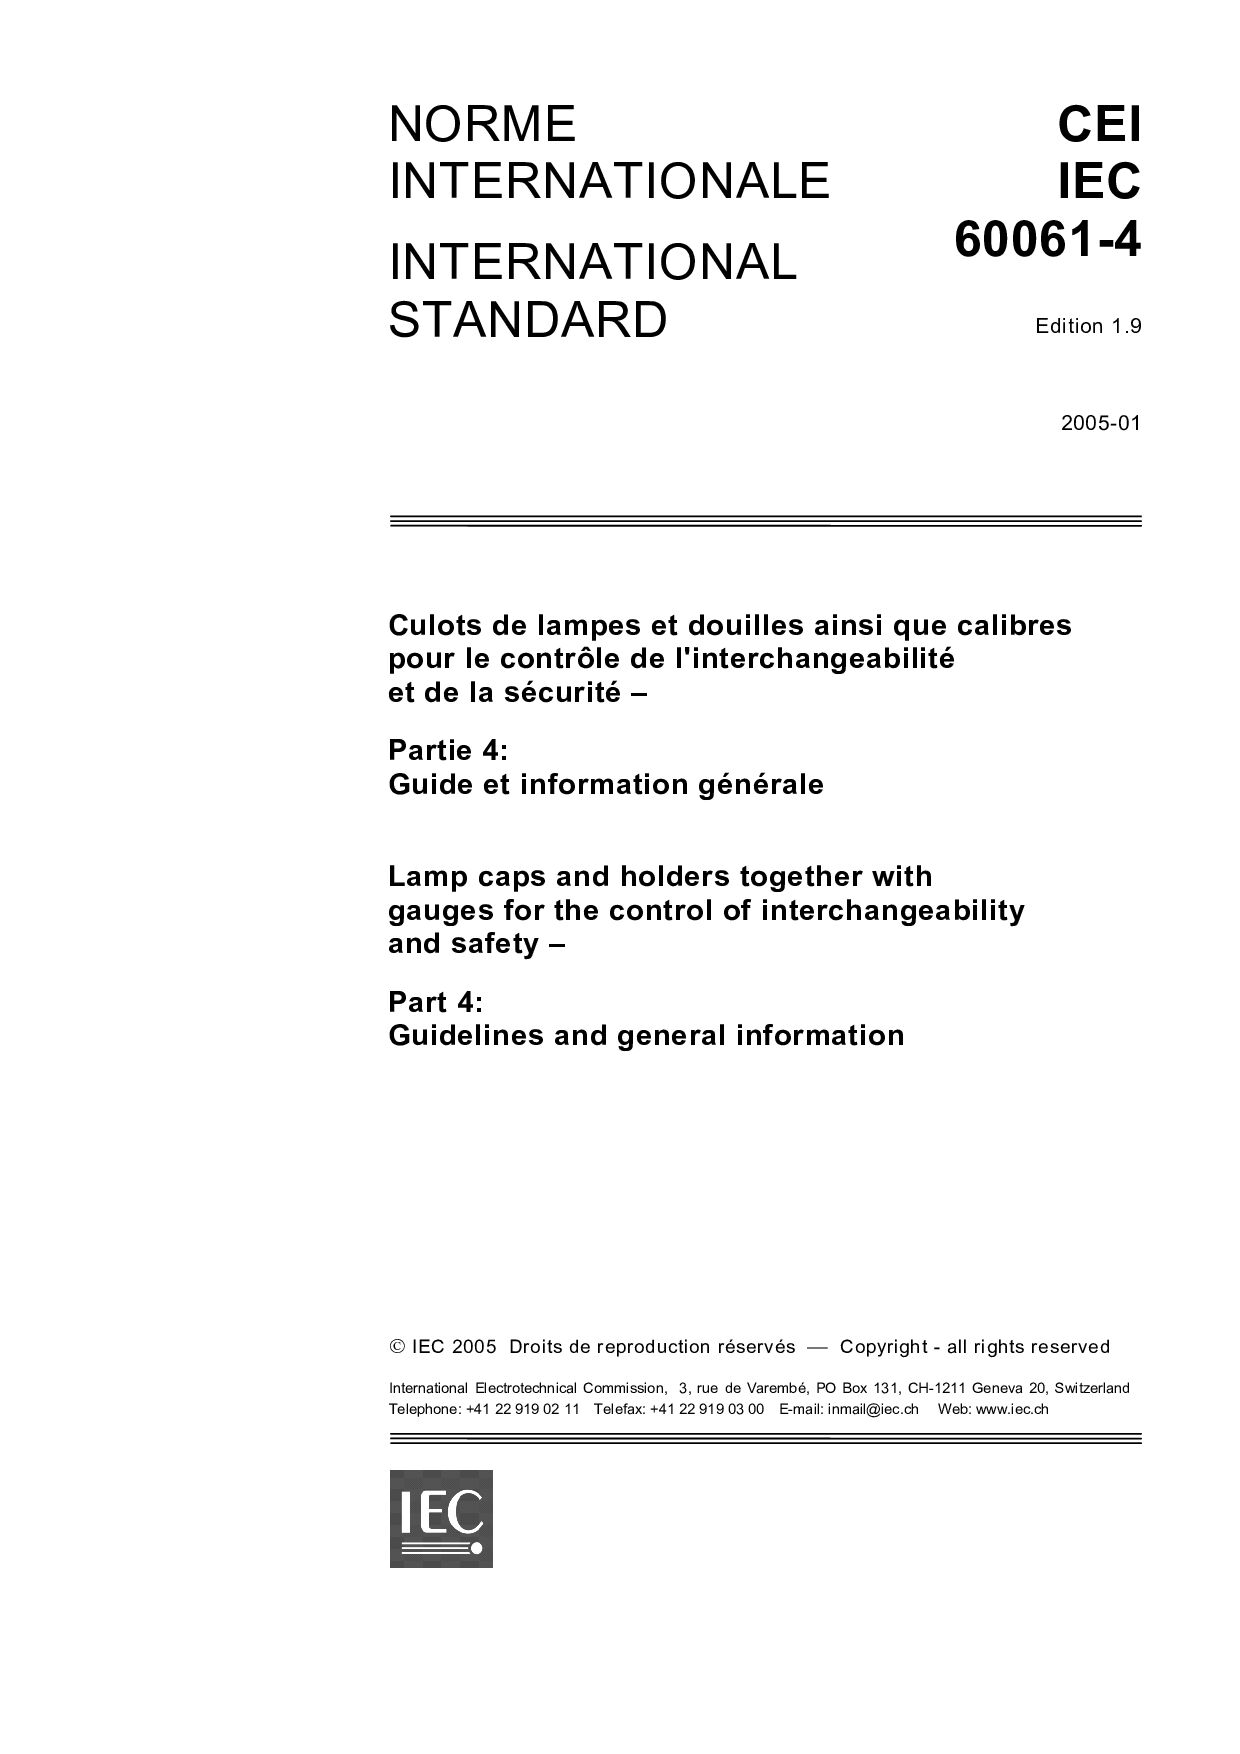 IEC 60061-4:2005